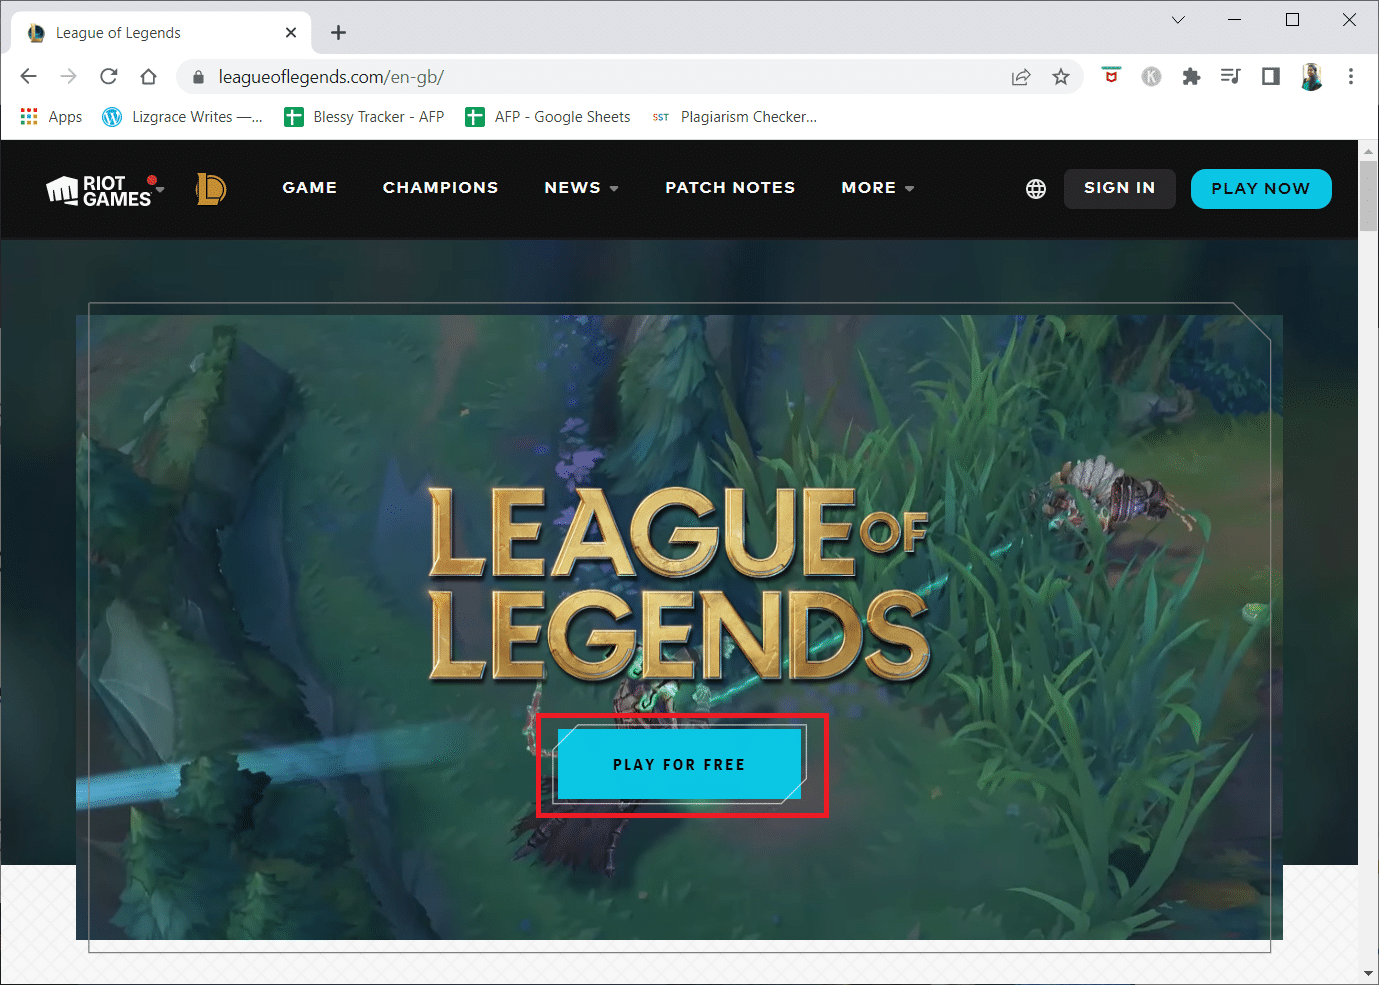 قم بزيارة صفحة تنزيل موقع ويب League of Legends الرسمي وانقر فوق الزر PLAY FOR FREE